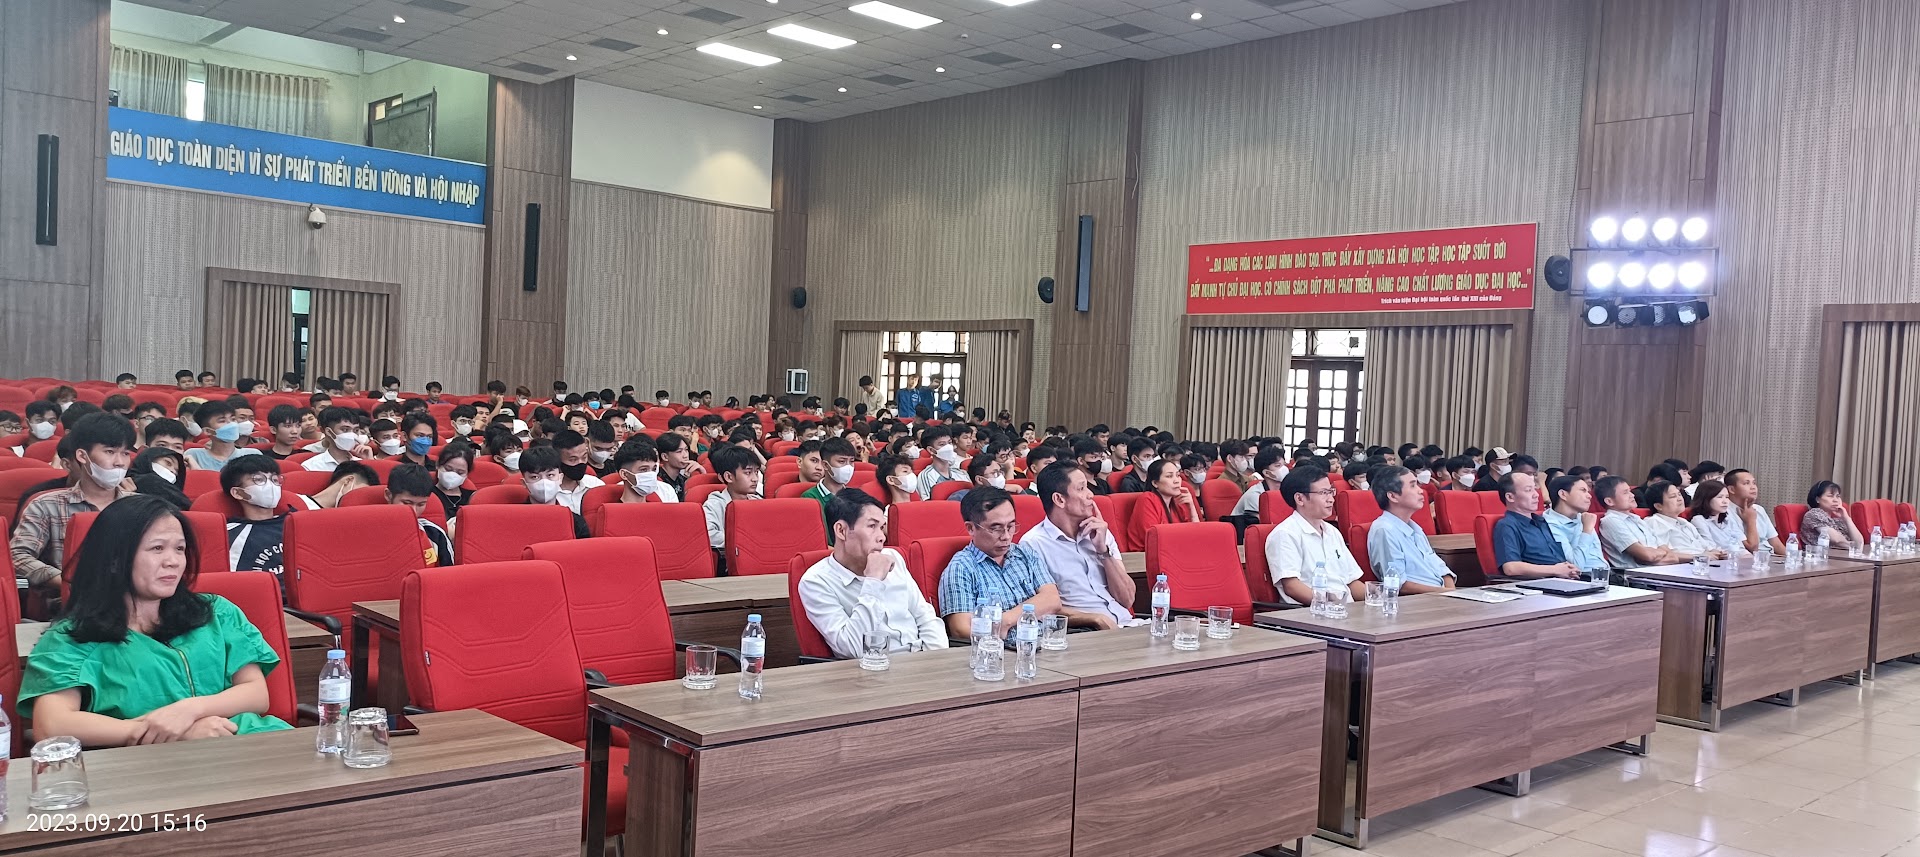 Trung tâm Việt - Nhật tổ chức chào tân sinh viên hệ cao đẳng khóa 25